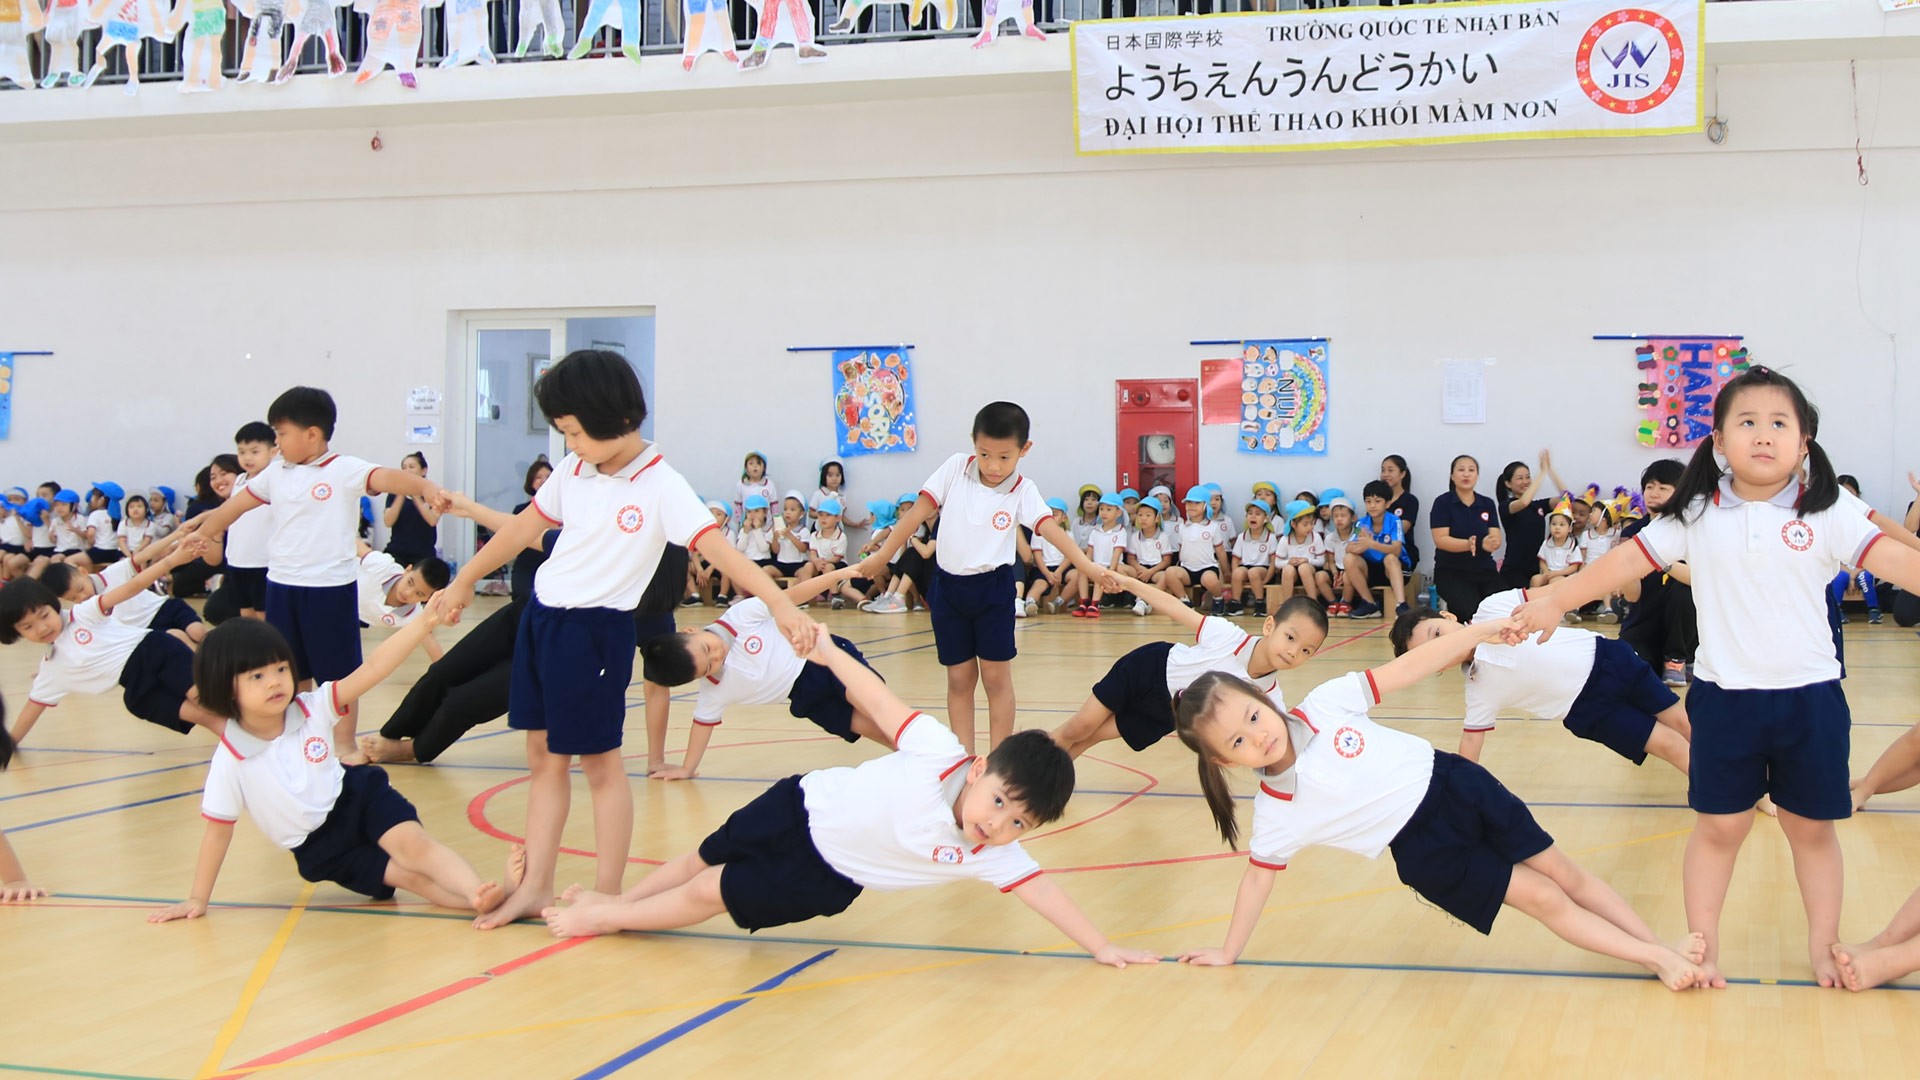 Trường Quốc tế Nhật Bản có phải là sự lựa chọn hoàn hảo cho bậc mầm non?